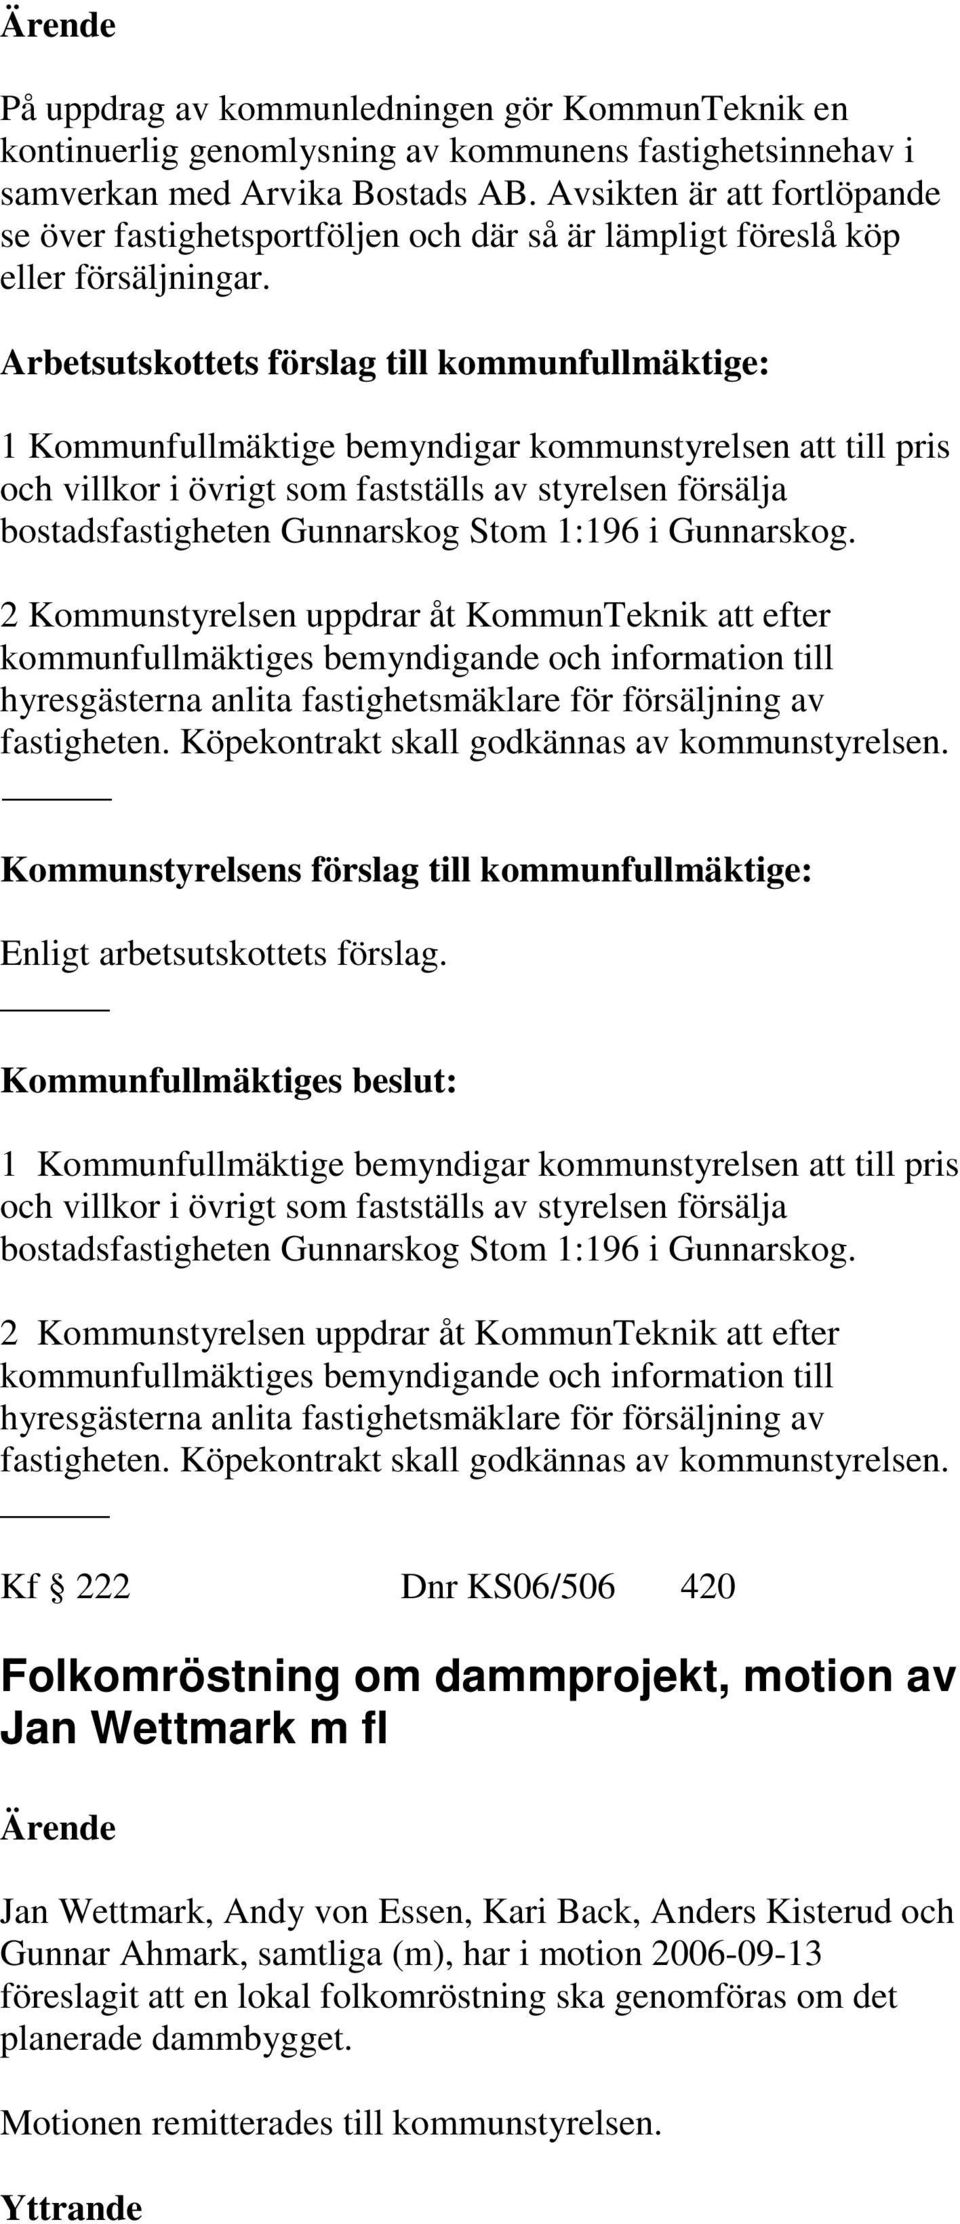 1 Kommunfullmäktige bemyndigar kommunstyrelsen att till pris och villkor i övrigt som fastställs av styrelsen försälja bostadsfastigheten Gunnarskog Stom 1:196 i Gunnarskog.